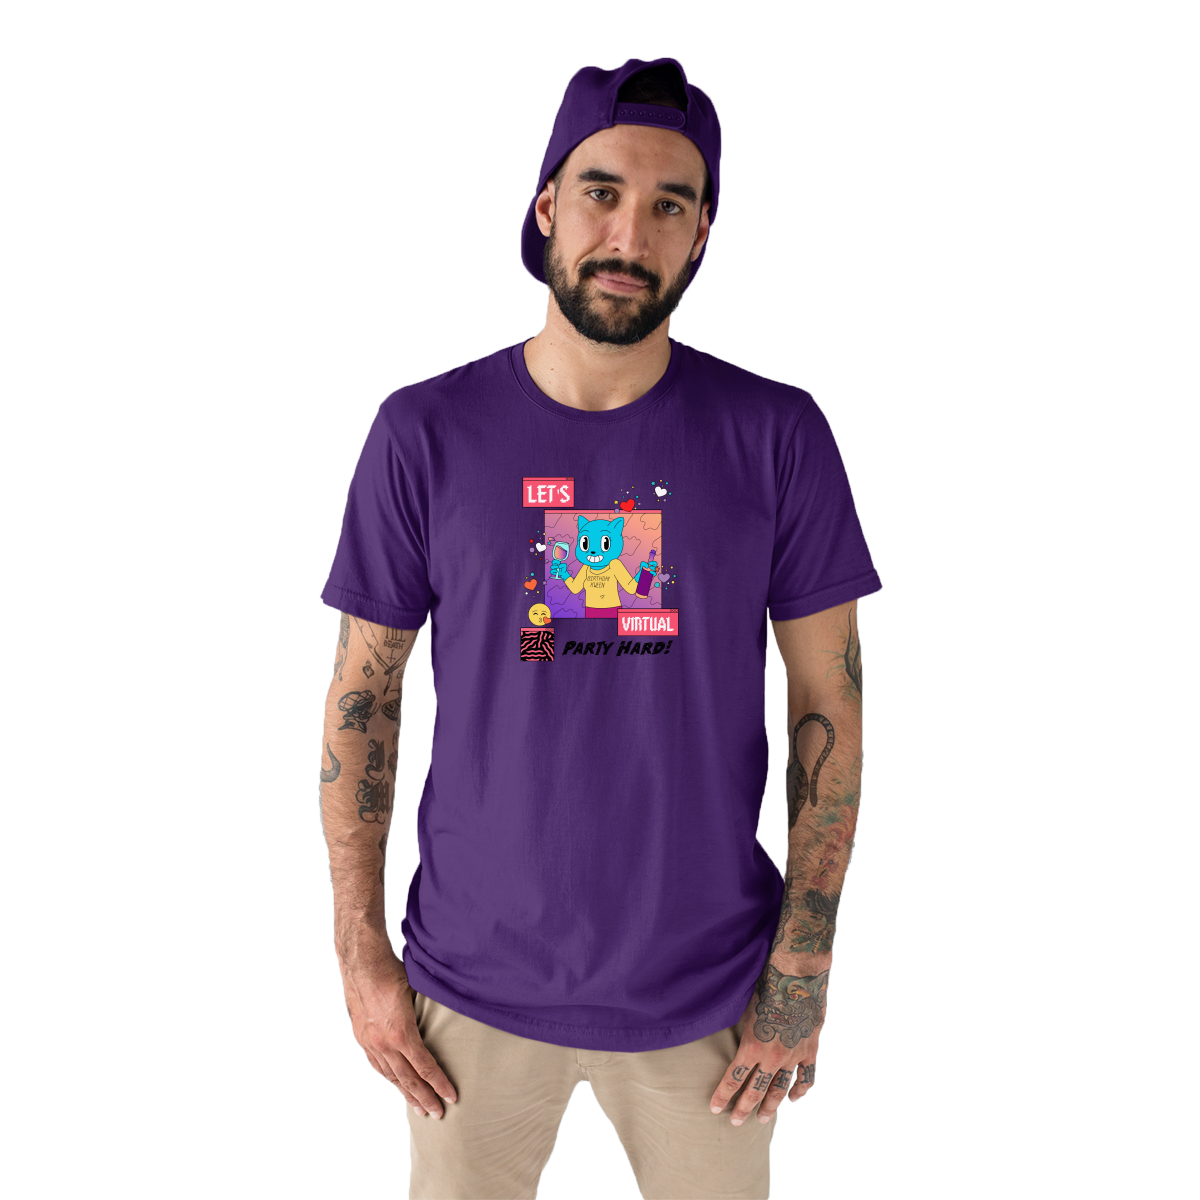 Let's Virtual Party Hard Men's T-shirt | Purple